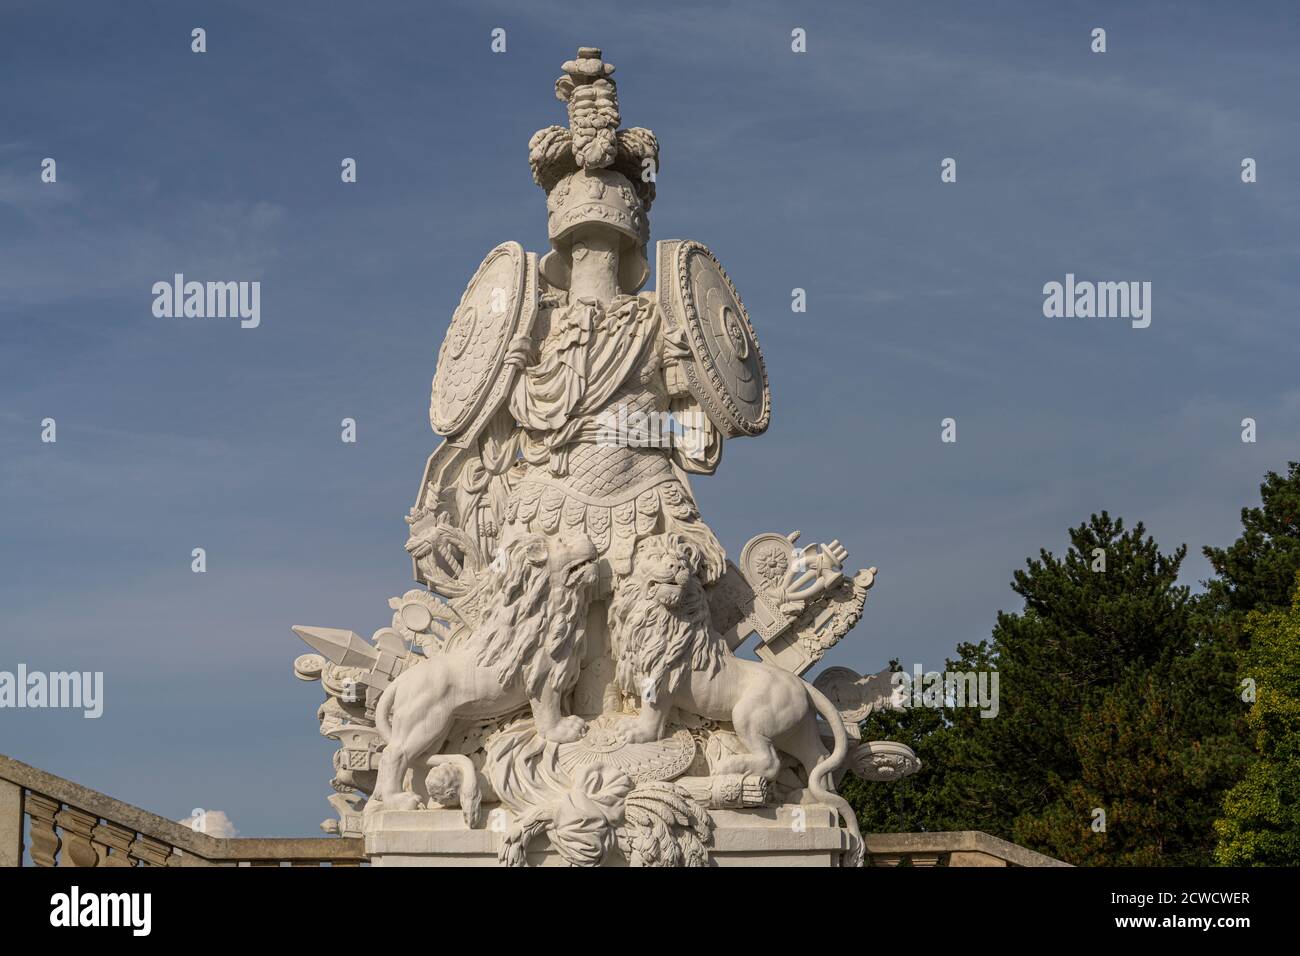 Statue an der Gloriette, Schloss Schönbrunn, UNESCO Welterbe in Wien, Österreich, Europa  |  Gloriette statue, Schönbrunn Palace, UNESCO World Heritag Stock Photo